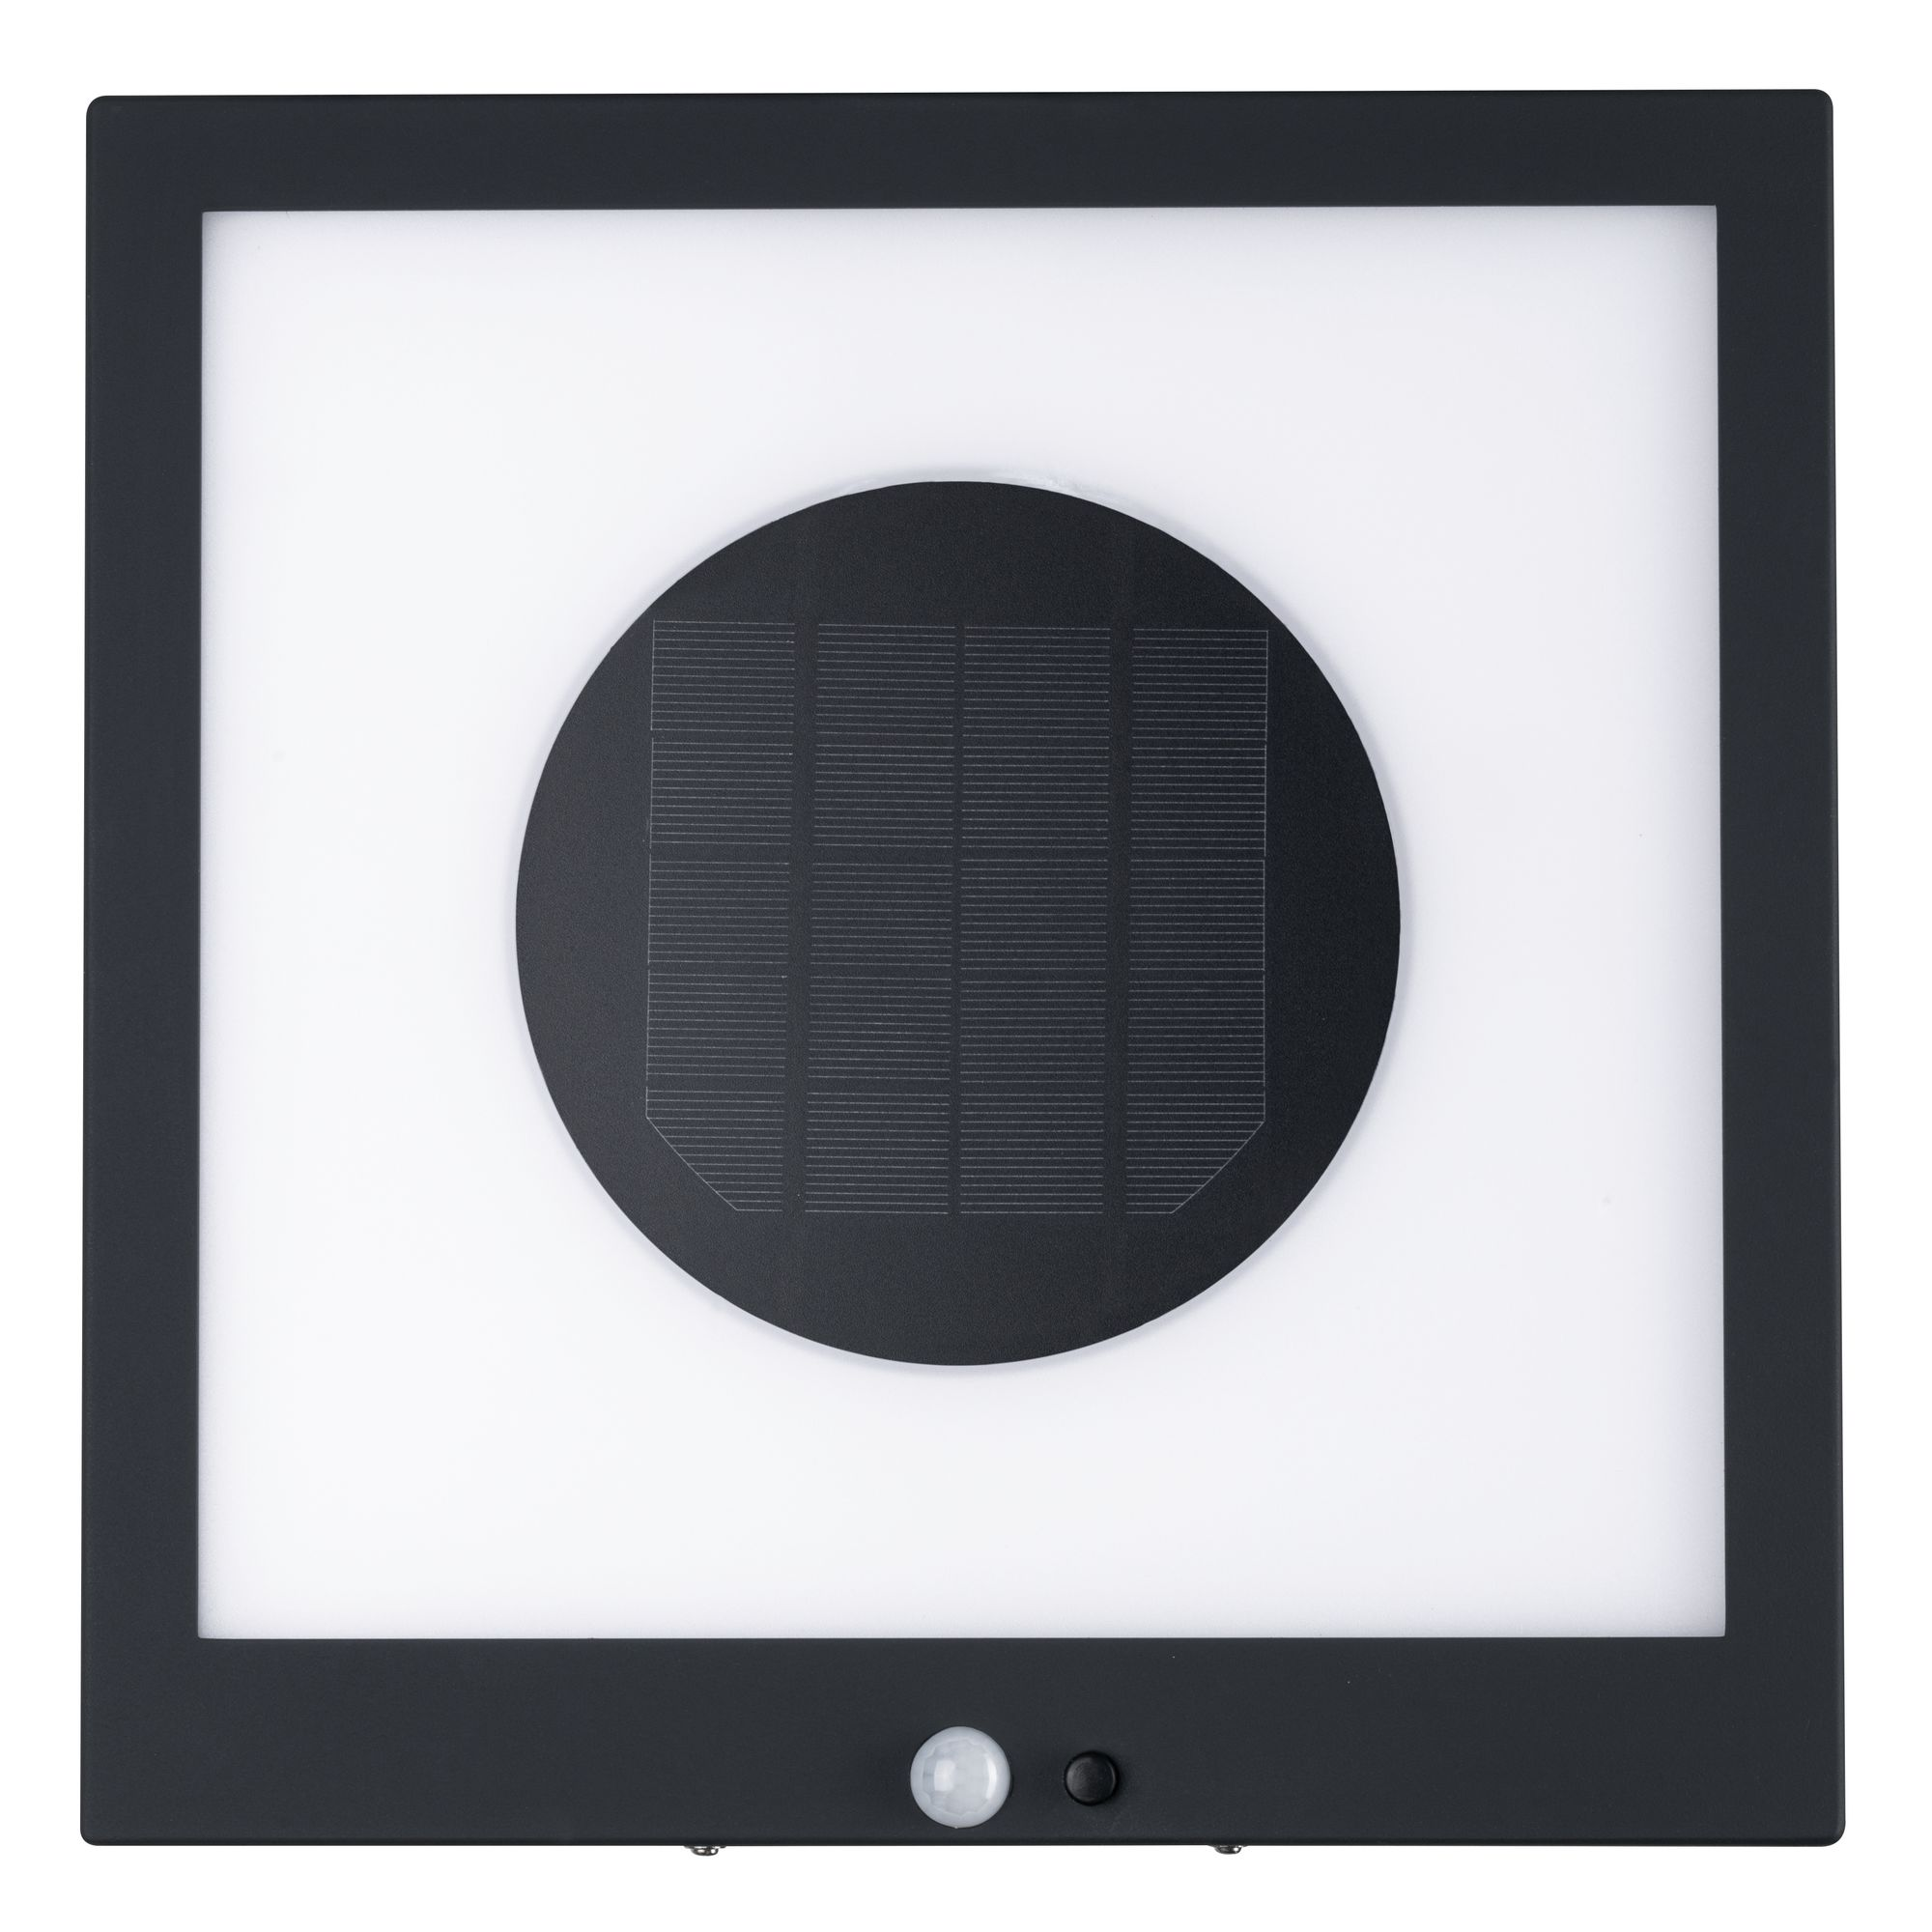 Solar-Wegeleuchte 'Mimmo' grau 9 x 6,3 x 5 cm + product picture